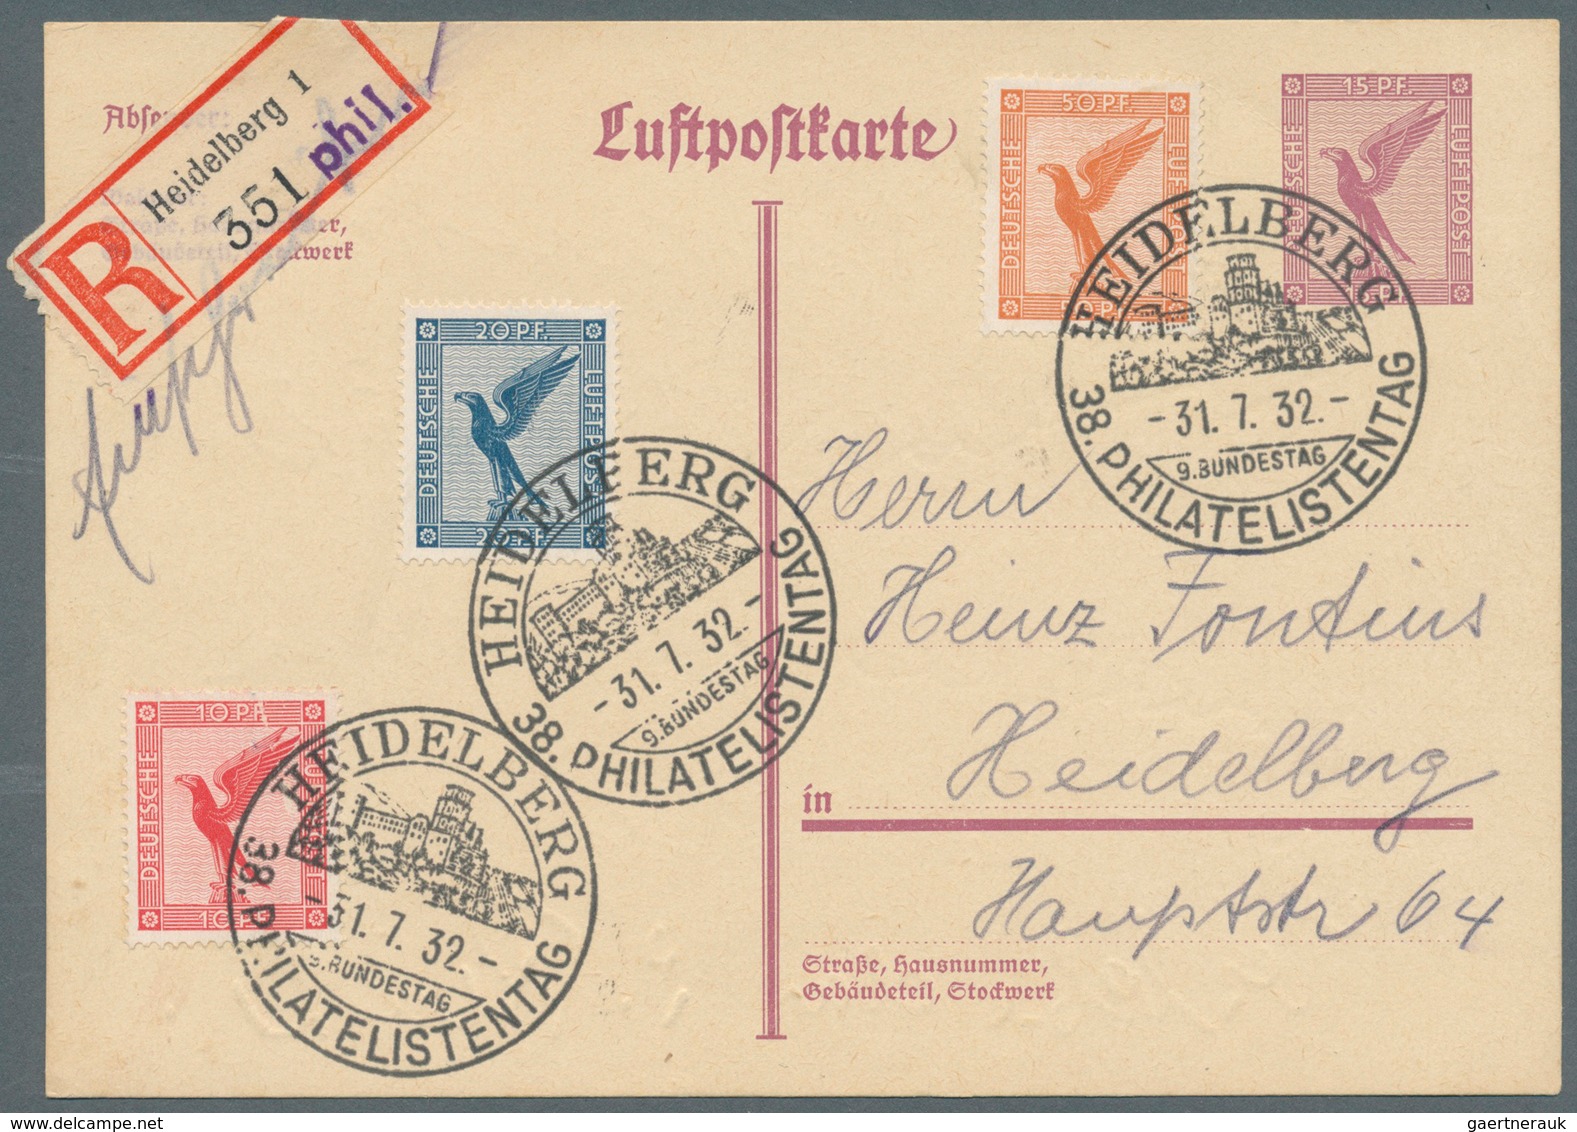 25416 Thematik: Philatelie - Tag der Briefmarke / stamp days: Ab 1897, Deutschland, Tag der Briefmarke, Ph